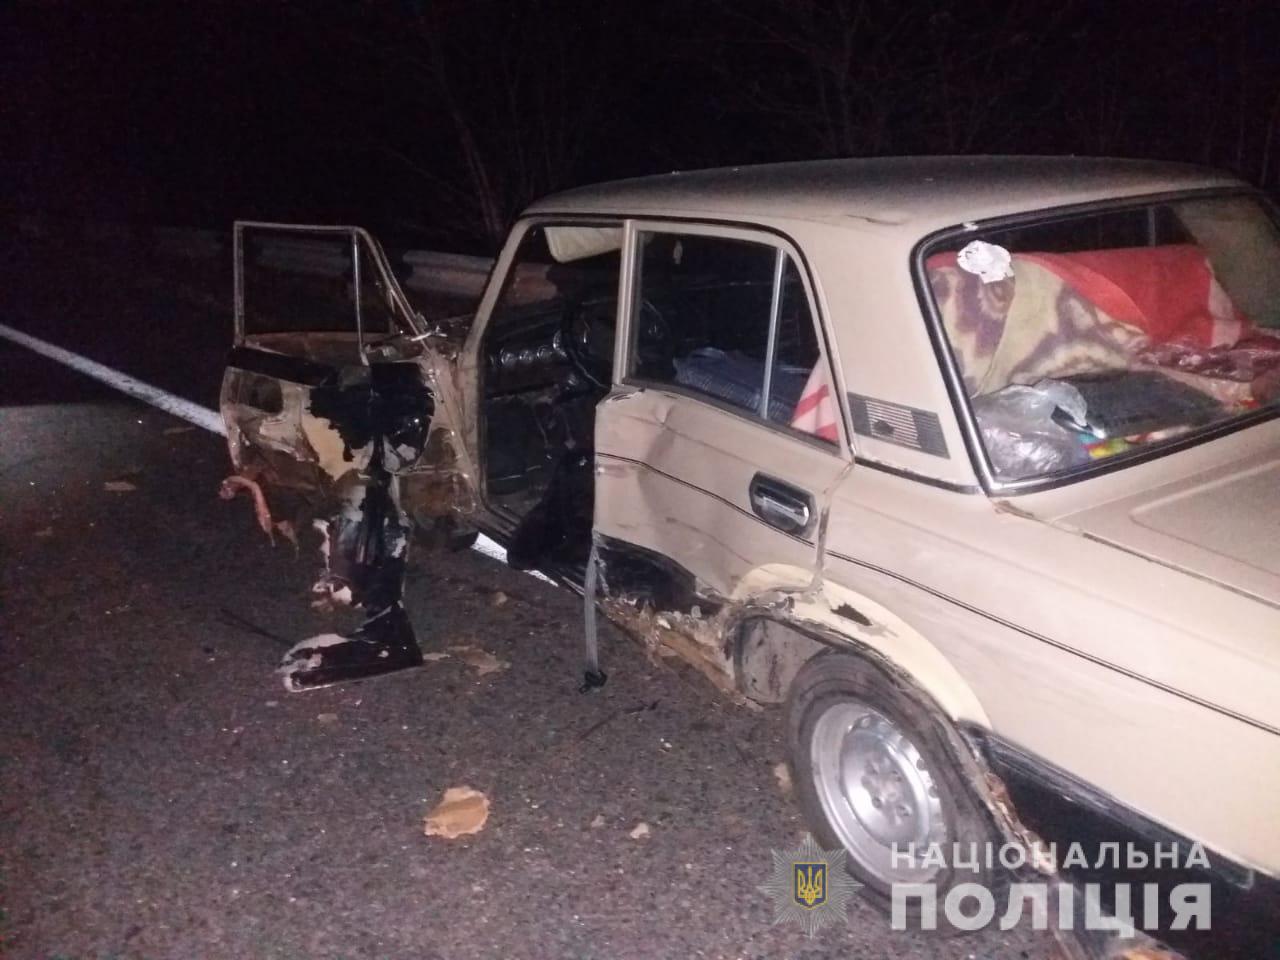 Под Харьковом микроавтобус насмерть сбил мужчину возле припаркованной машины